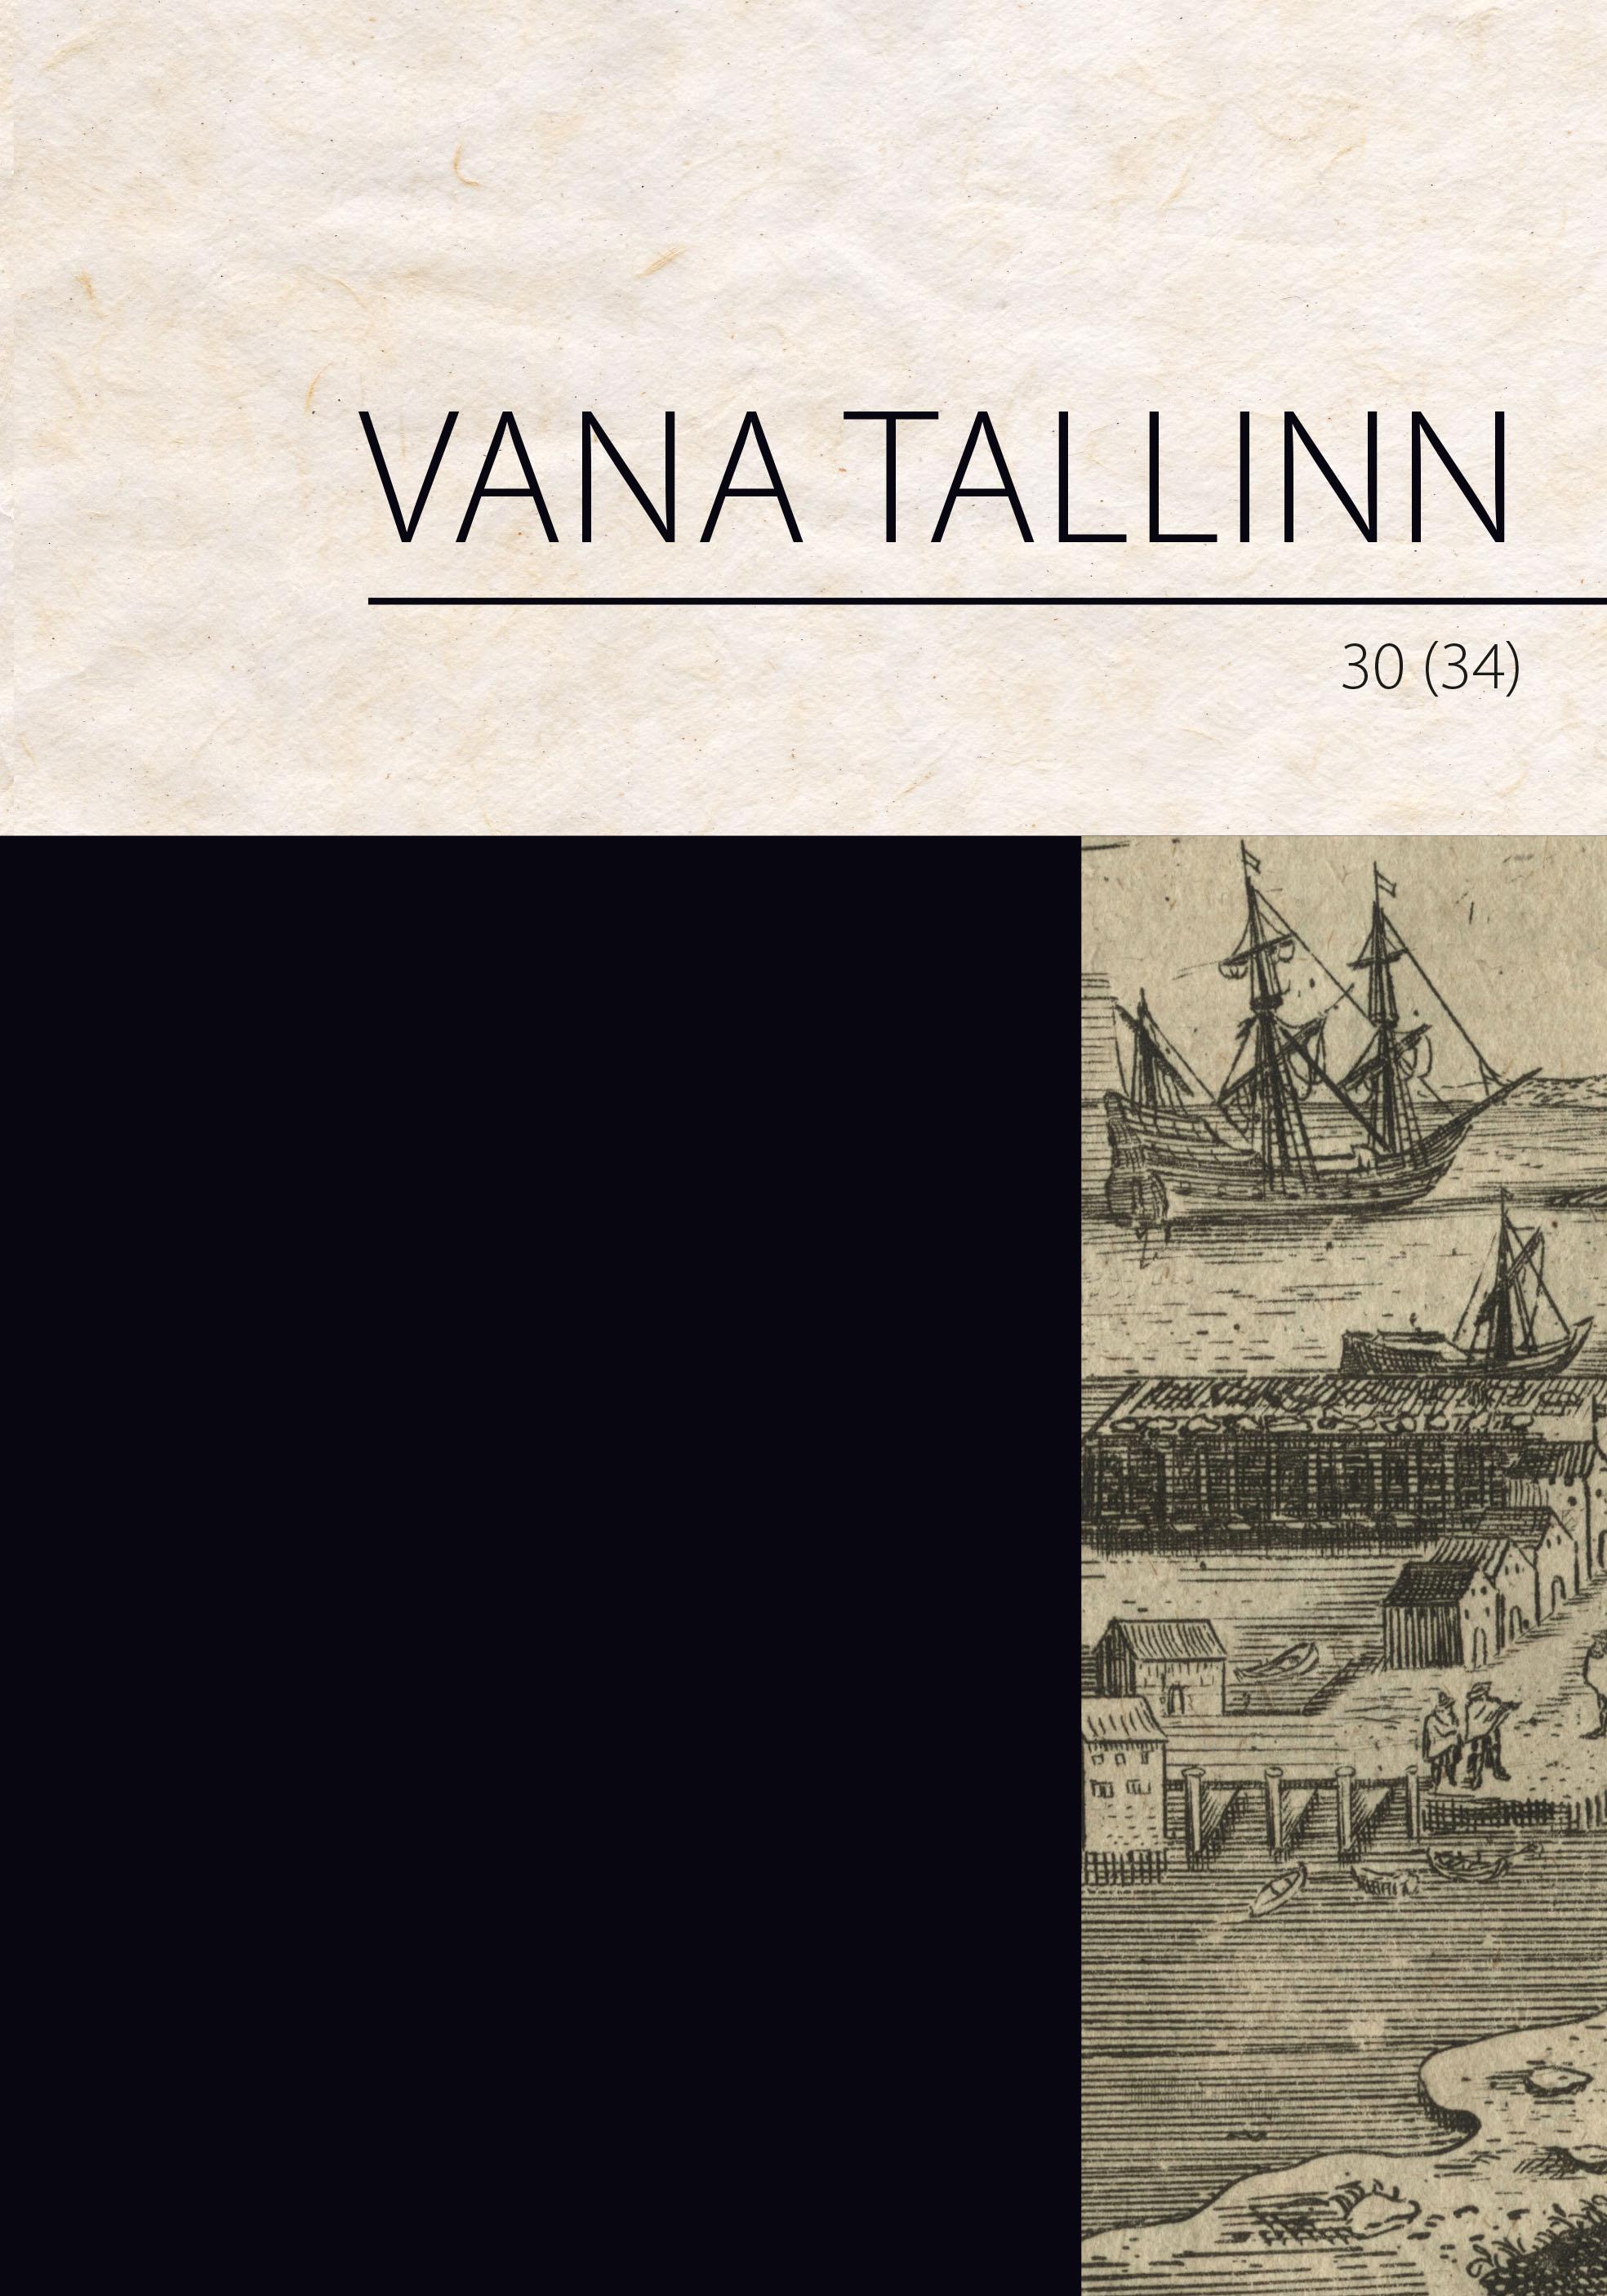 VANA TALLINN 30 (34)